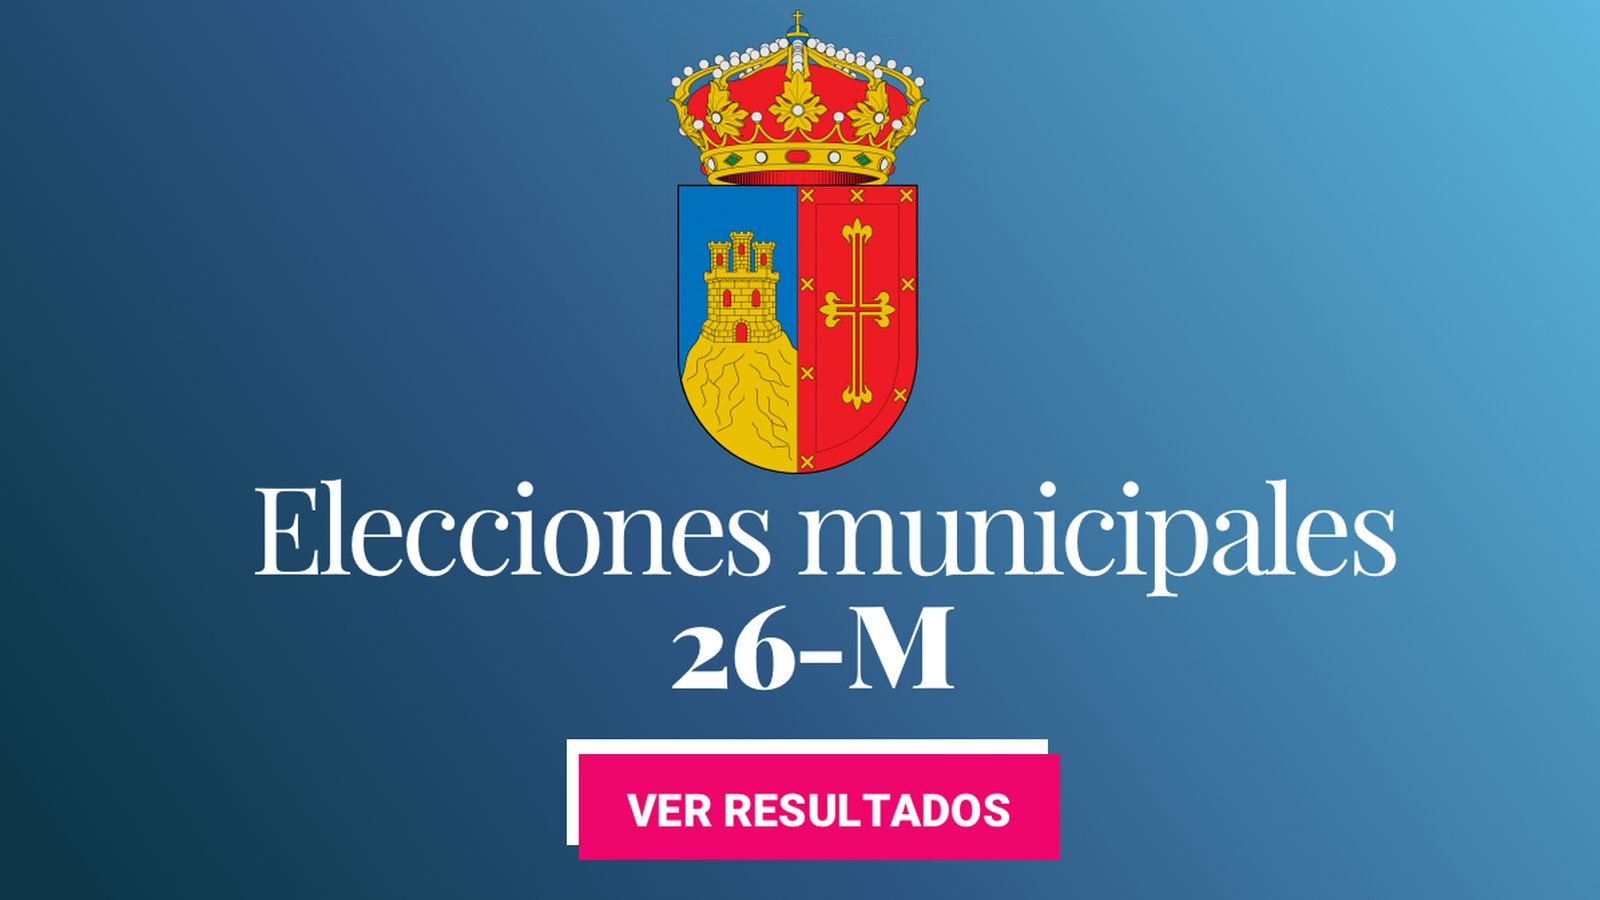 Foto: Elecciones municipales 2019 en Pozuelo de Alarcón. (C.C./EC)